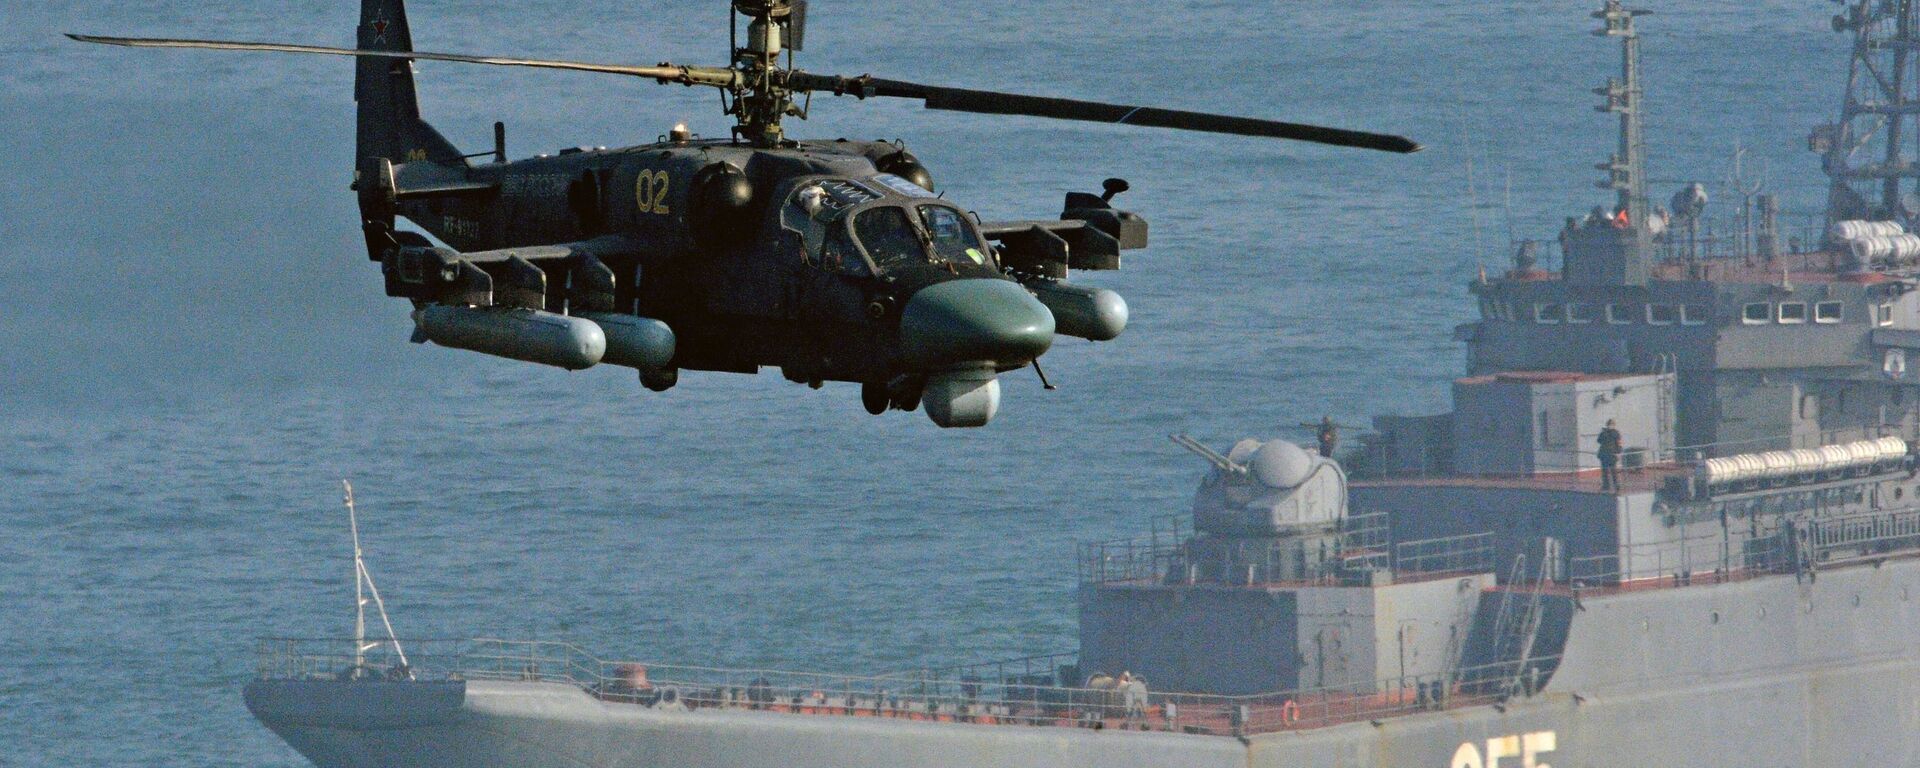 Вертолет Ка-52 Аллигатор и большой десантный корабль (БДК) Адмирал Невельской - Sputnik Latvija, 1920, 05.12.2019